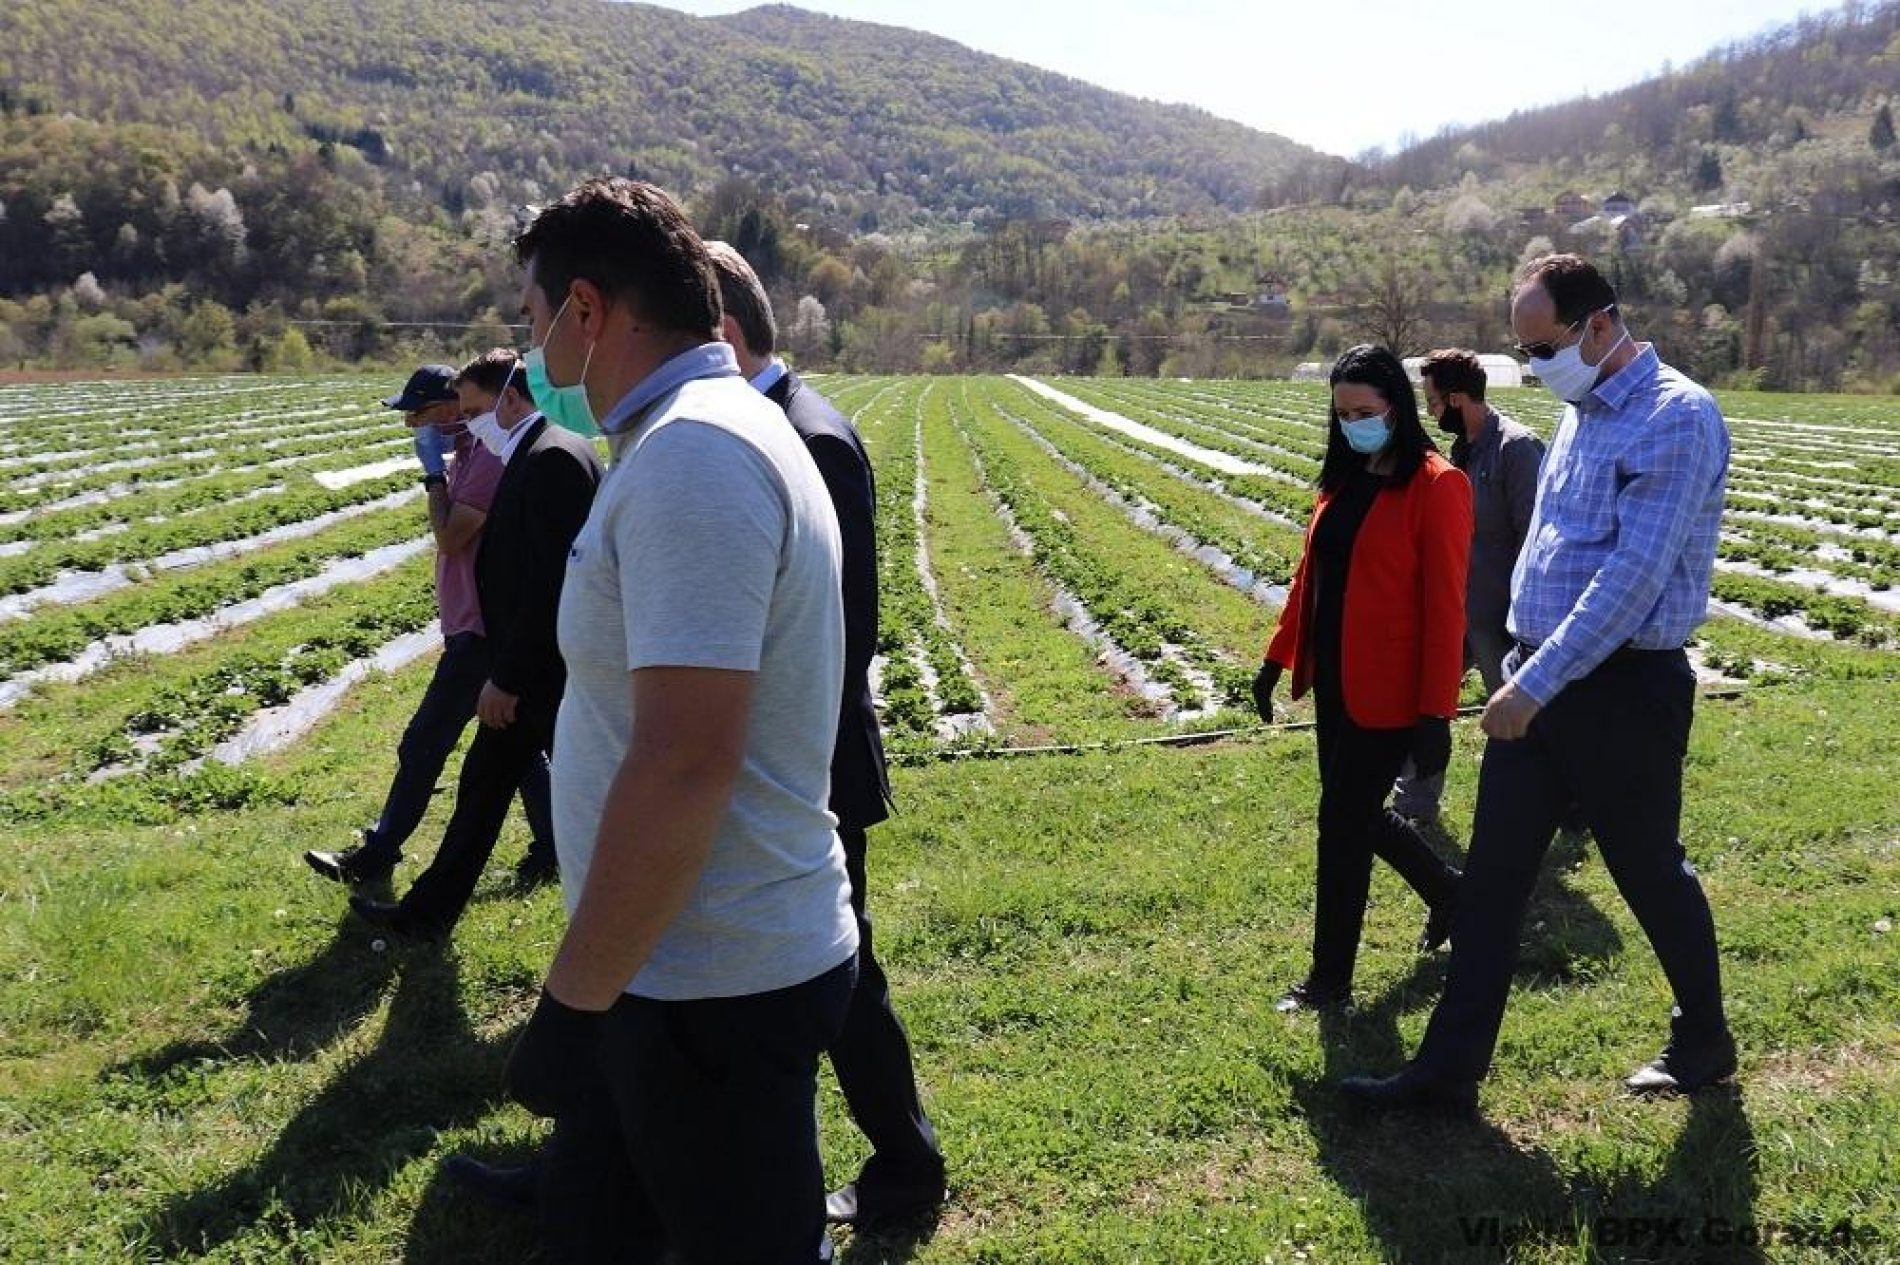 Kompanija “Agro ideja” iz Sarajeva na području Ustikoline proizvodi voće i povrće